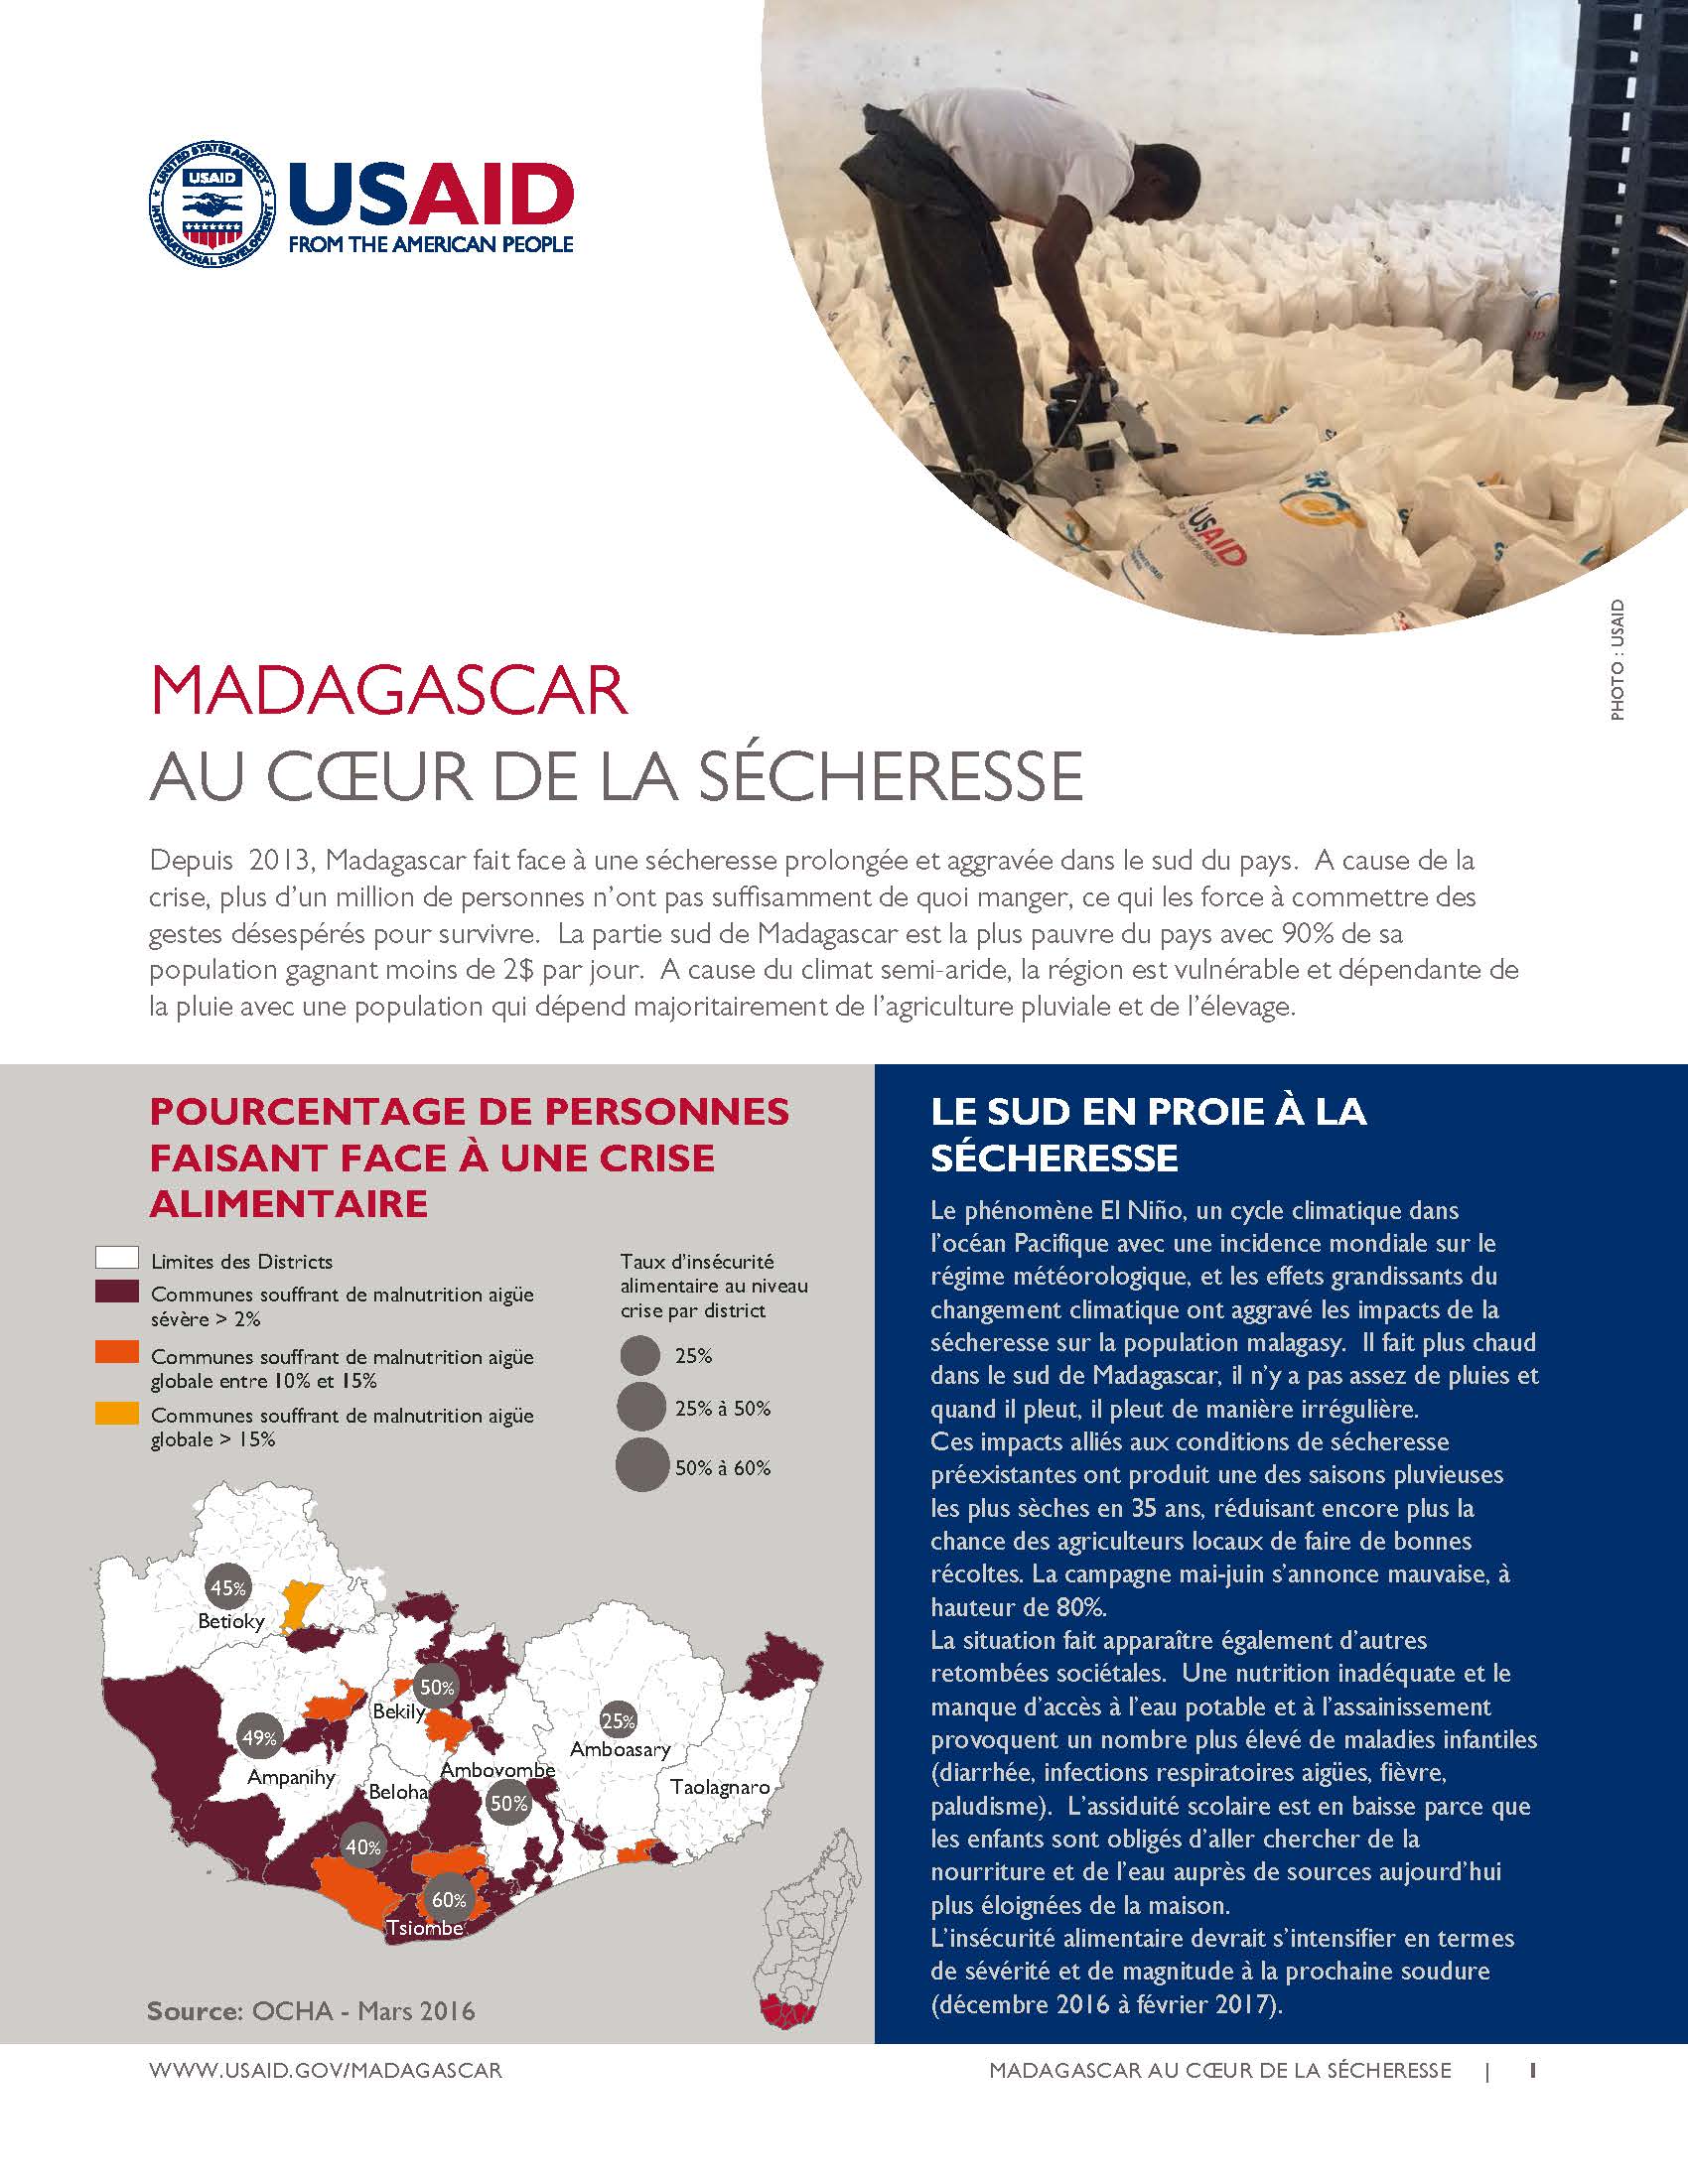 Madagascar: AU CŒUR DE LA SÉCHERESSE